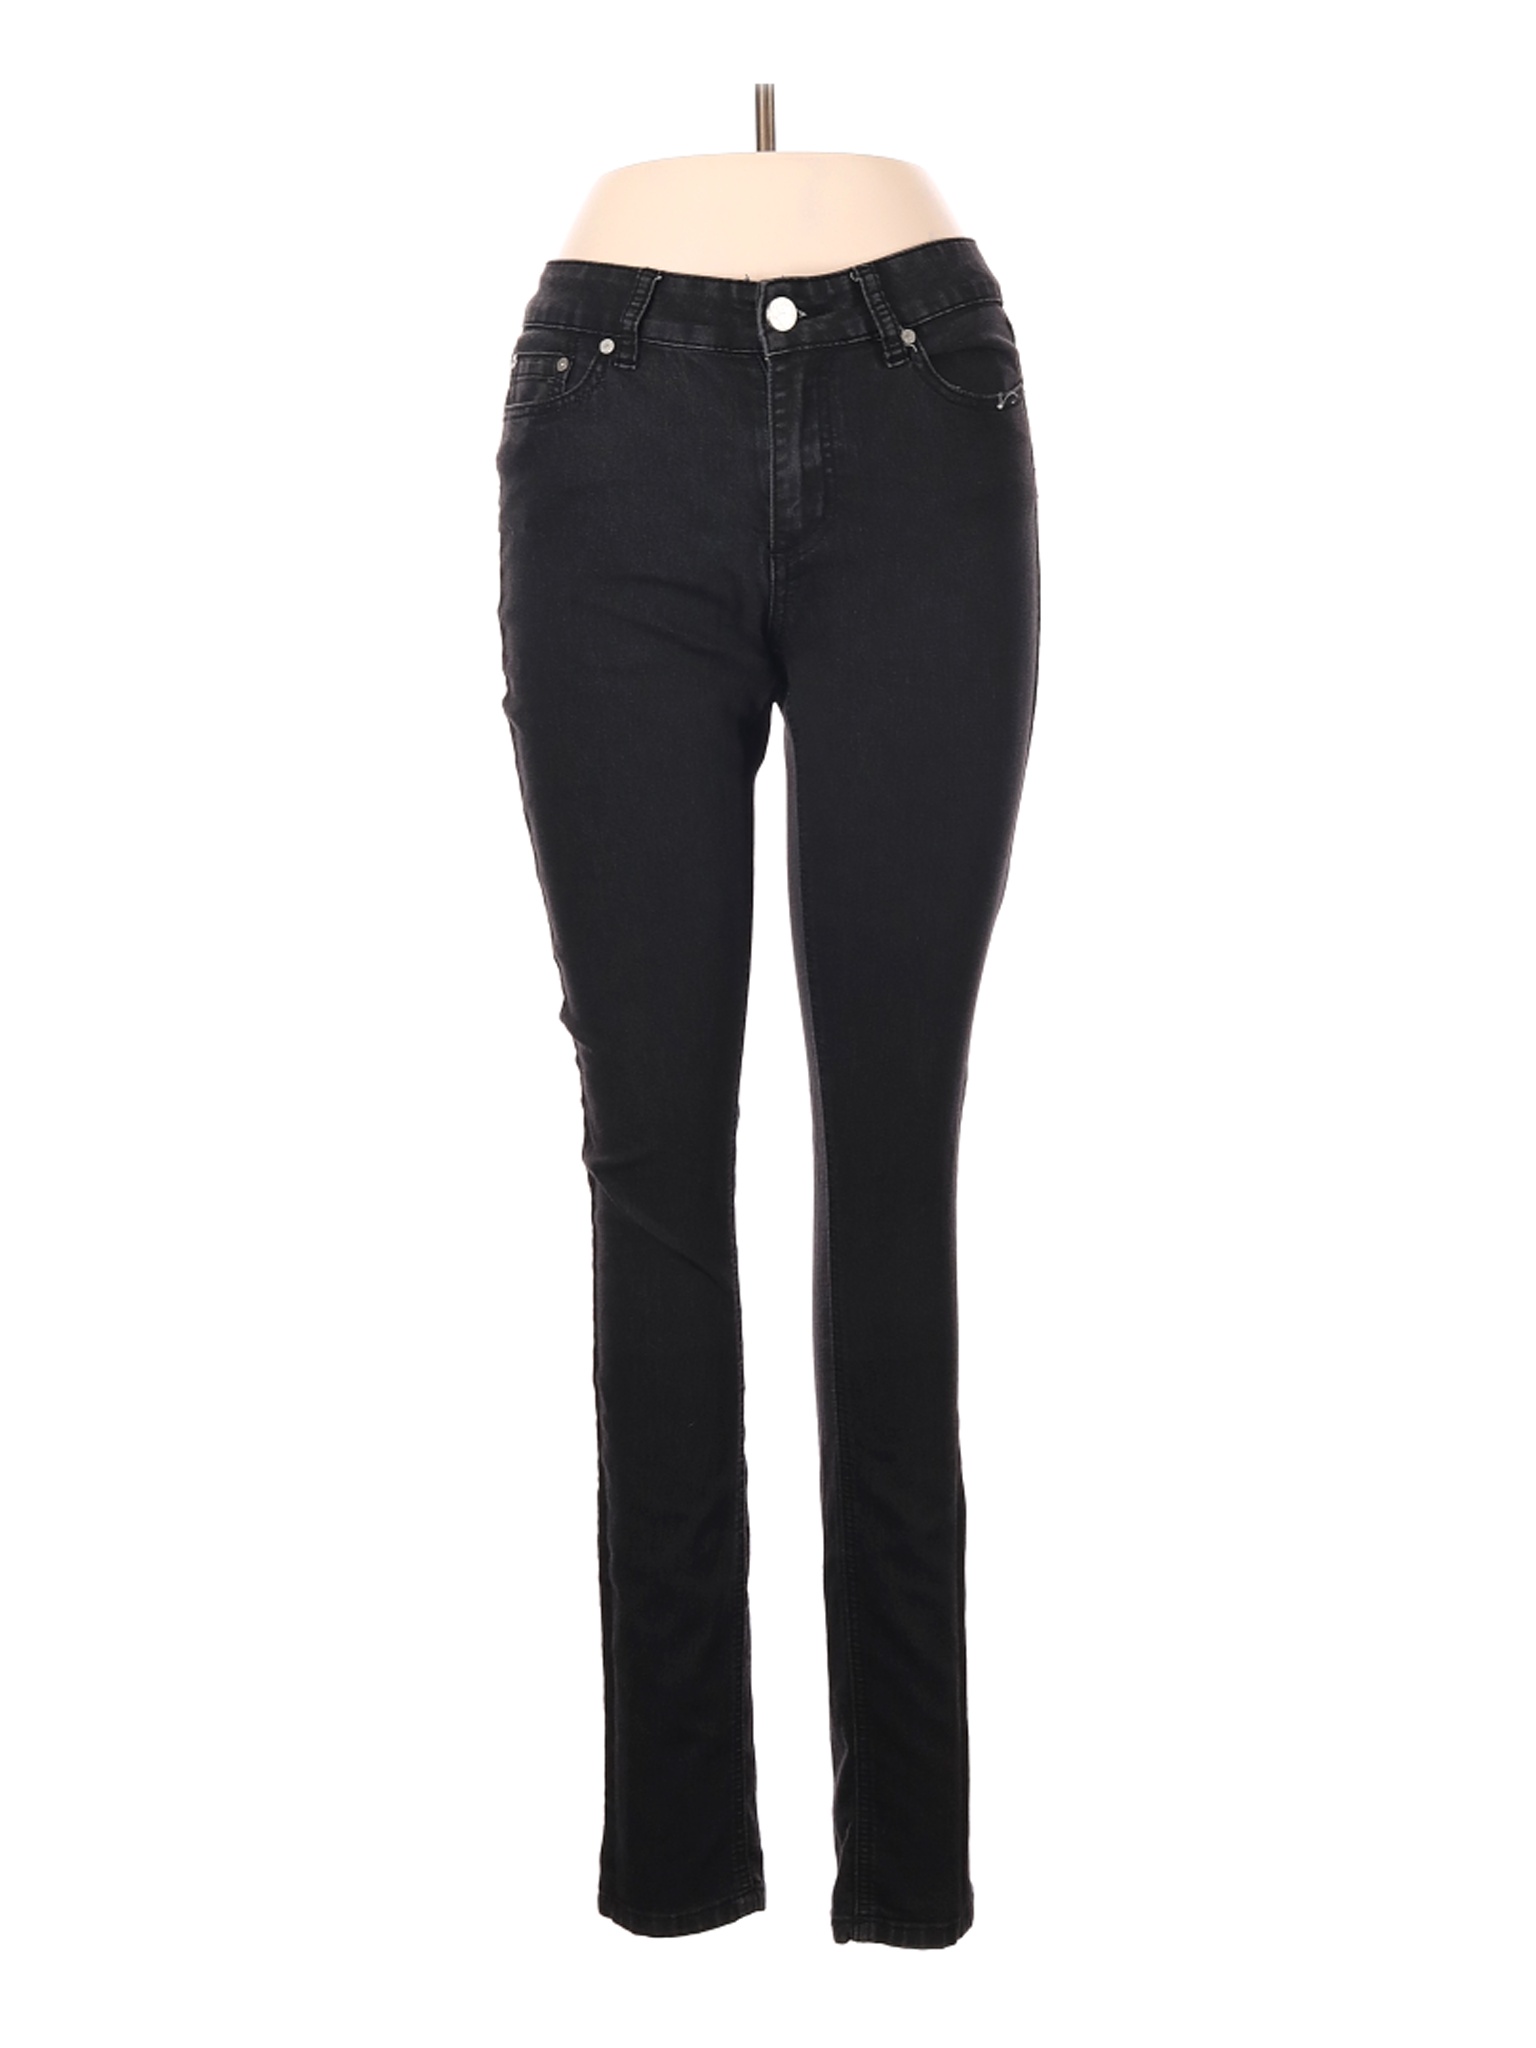 Indigo Rein Women Black Jeans 9 | eBay